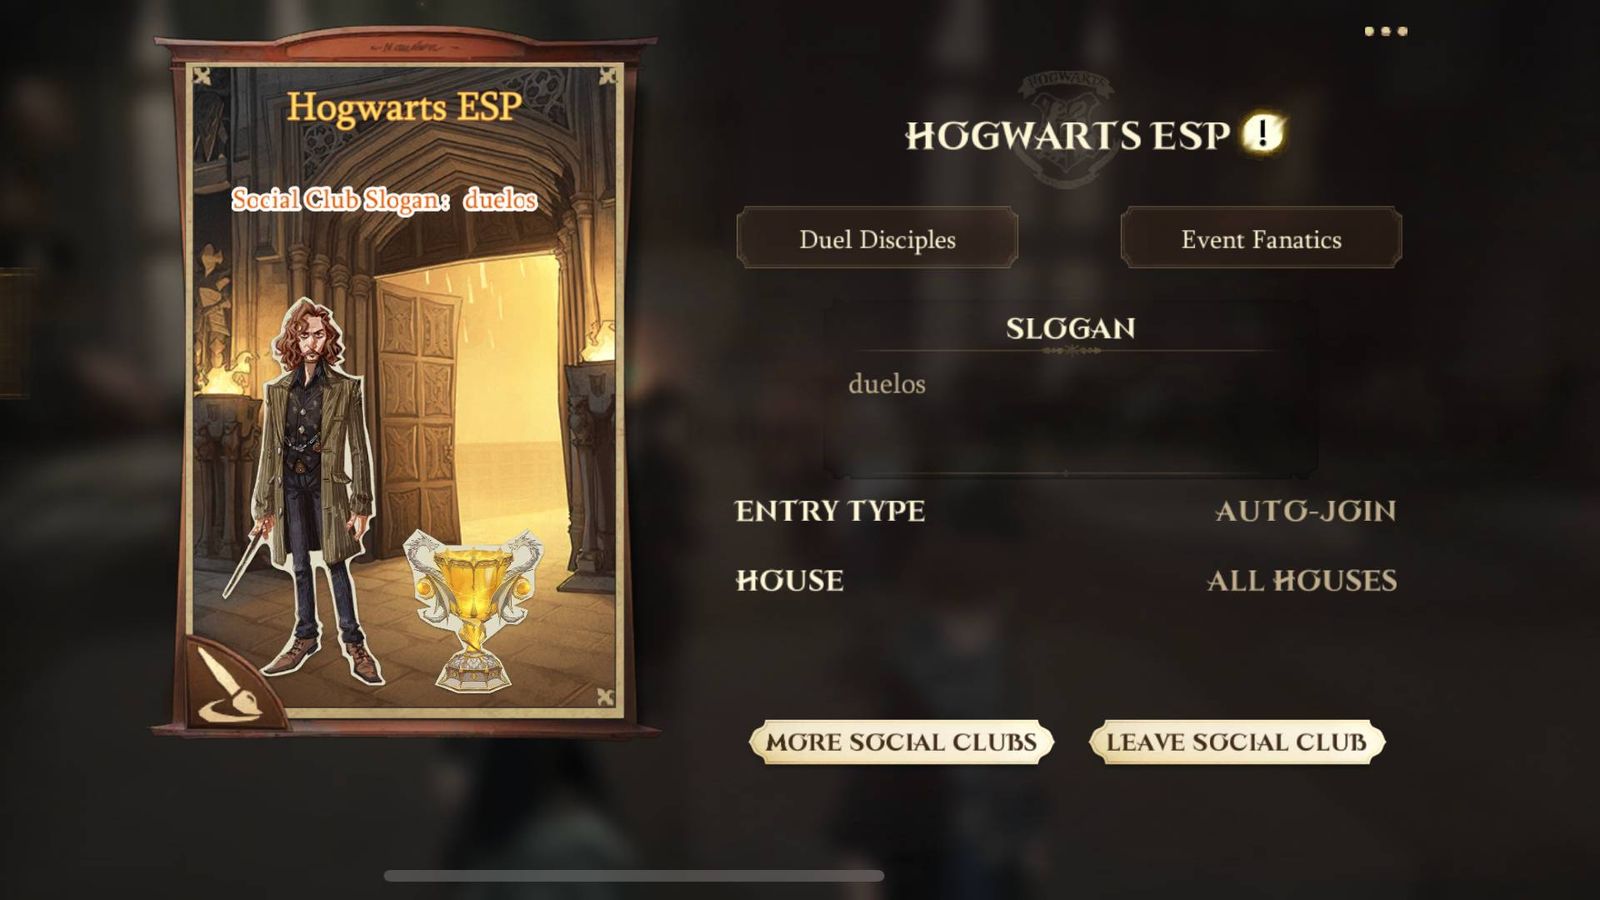 The social club menu in Harry Potter Magic Awakened.